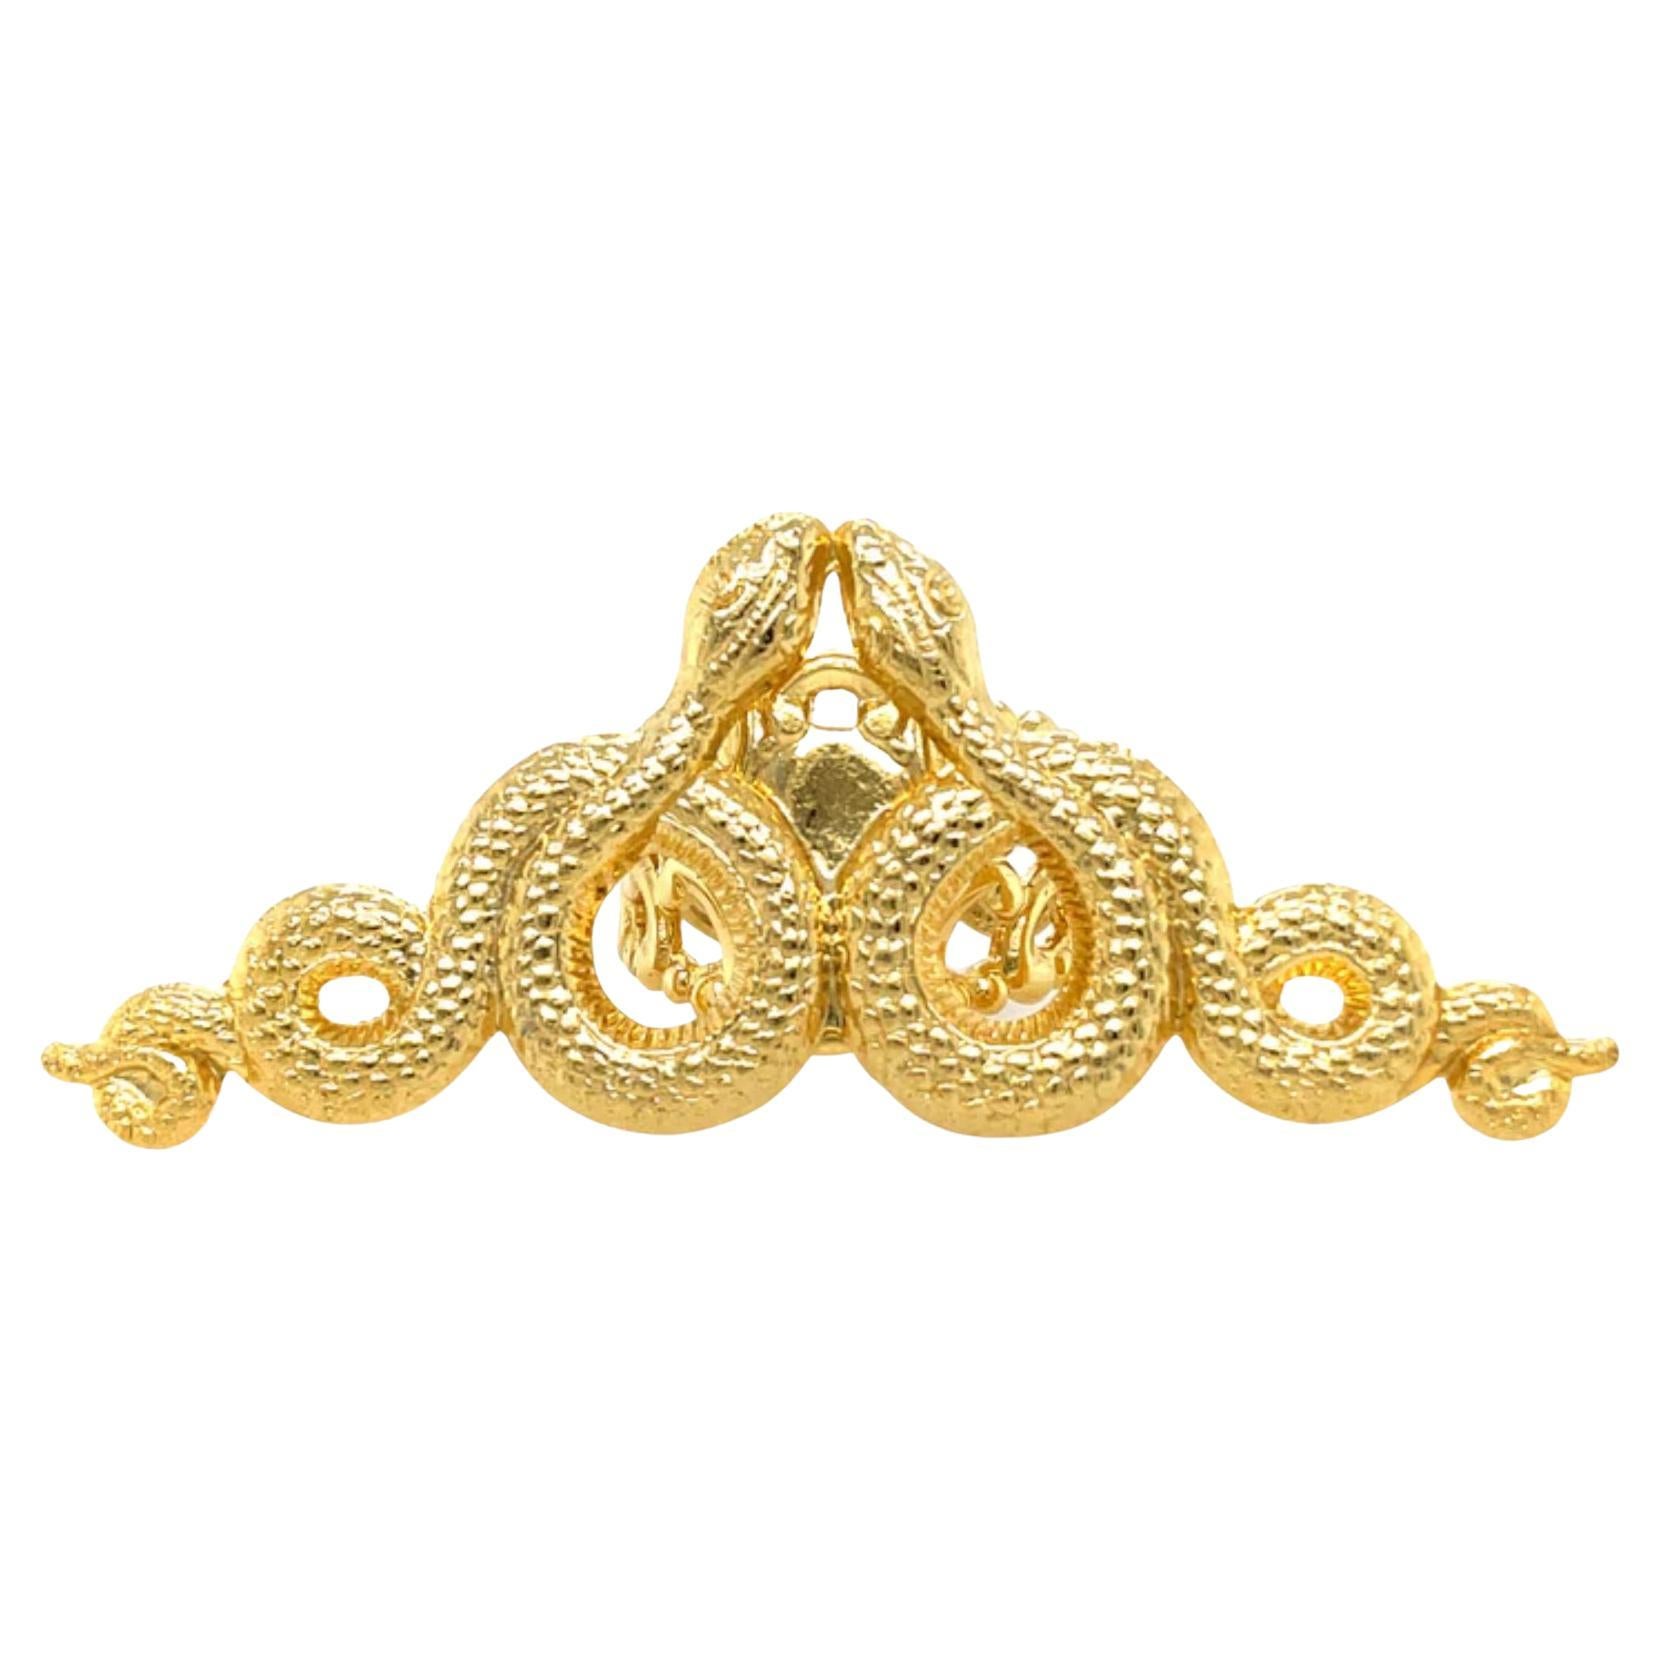 24K Gold Snake Ring with Snake Symbolism For Sale